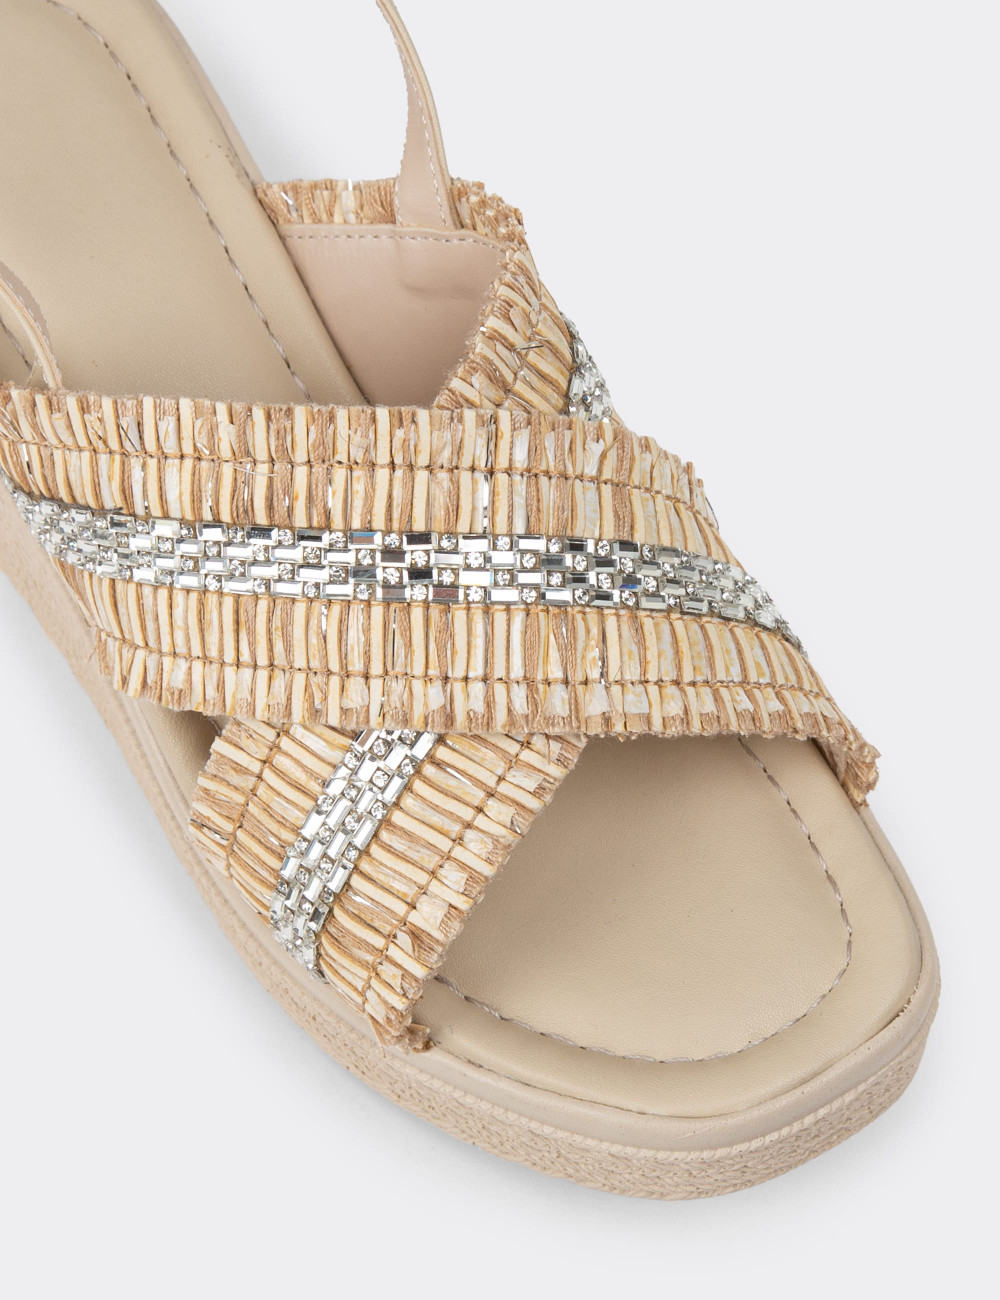 Bej Rengi Dolgu Topuk Kadın Sandalet - K0804ZBEJC01